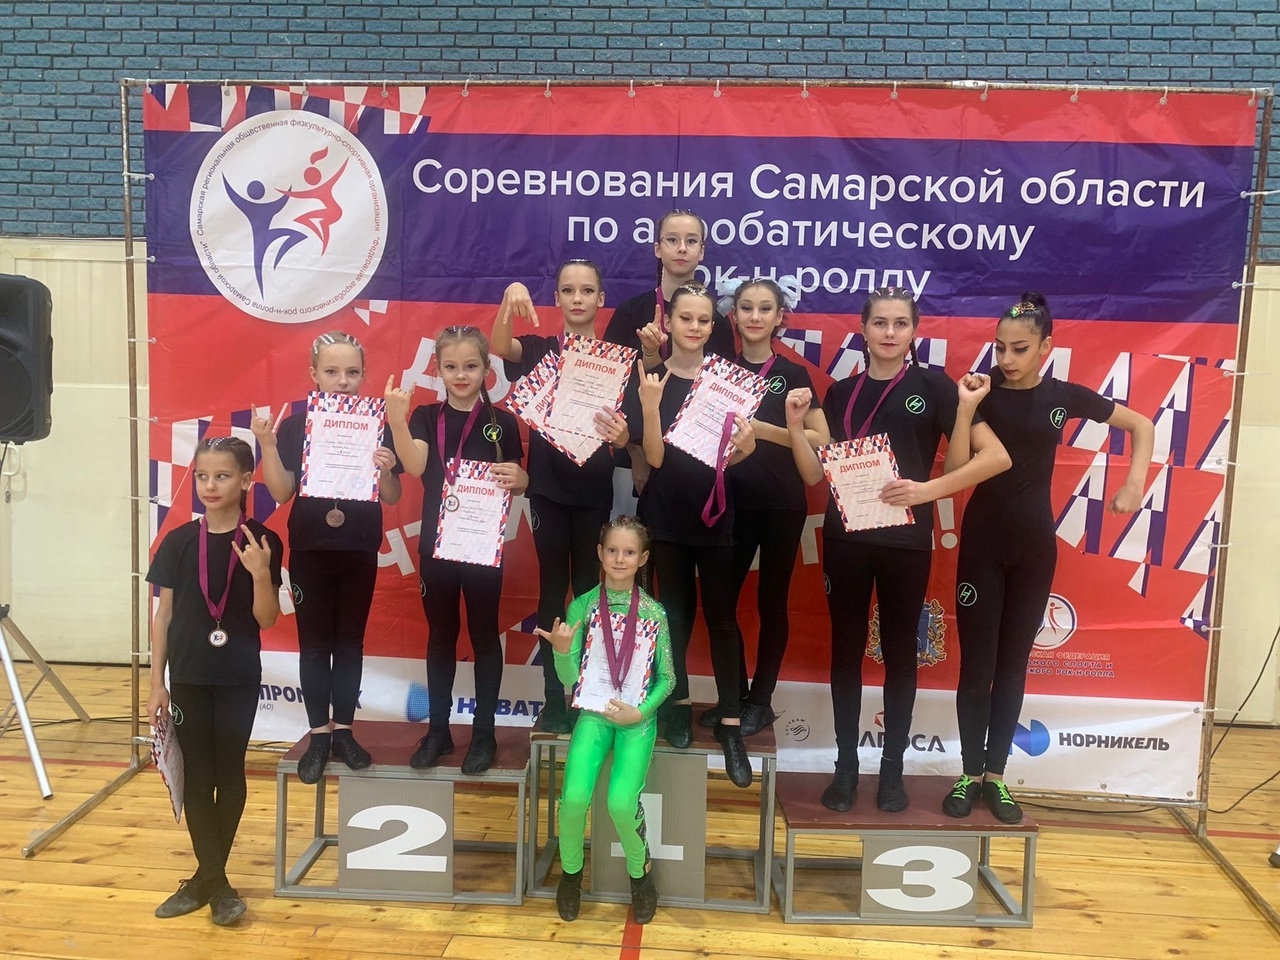 Ученица 2 «Г» класса Кочкурова Кира, вместе со своей командой заняли 3 место в соревнованиях Самарской области по акробатическому Рок-н-роллу.